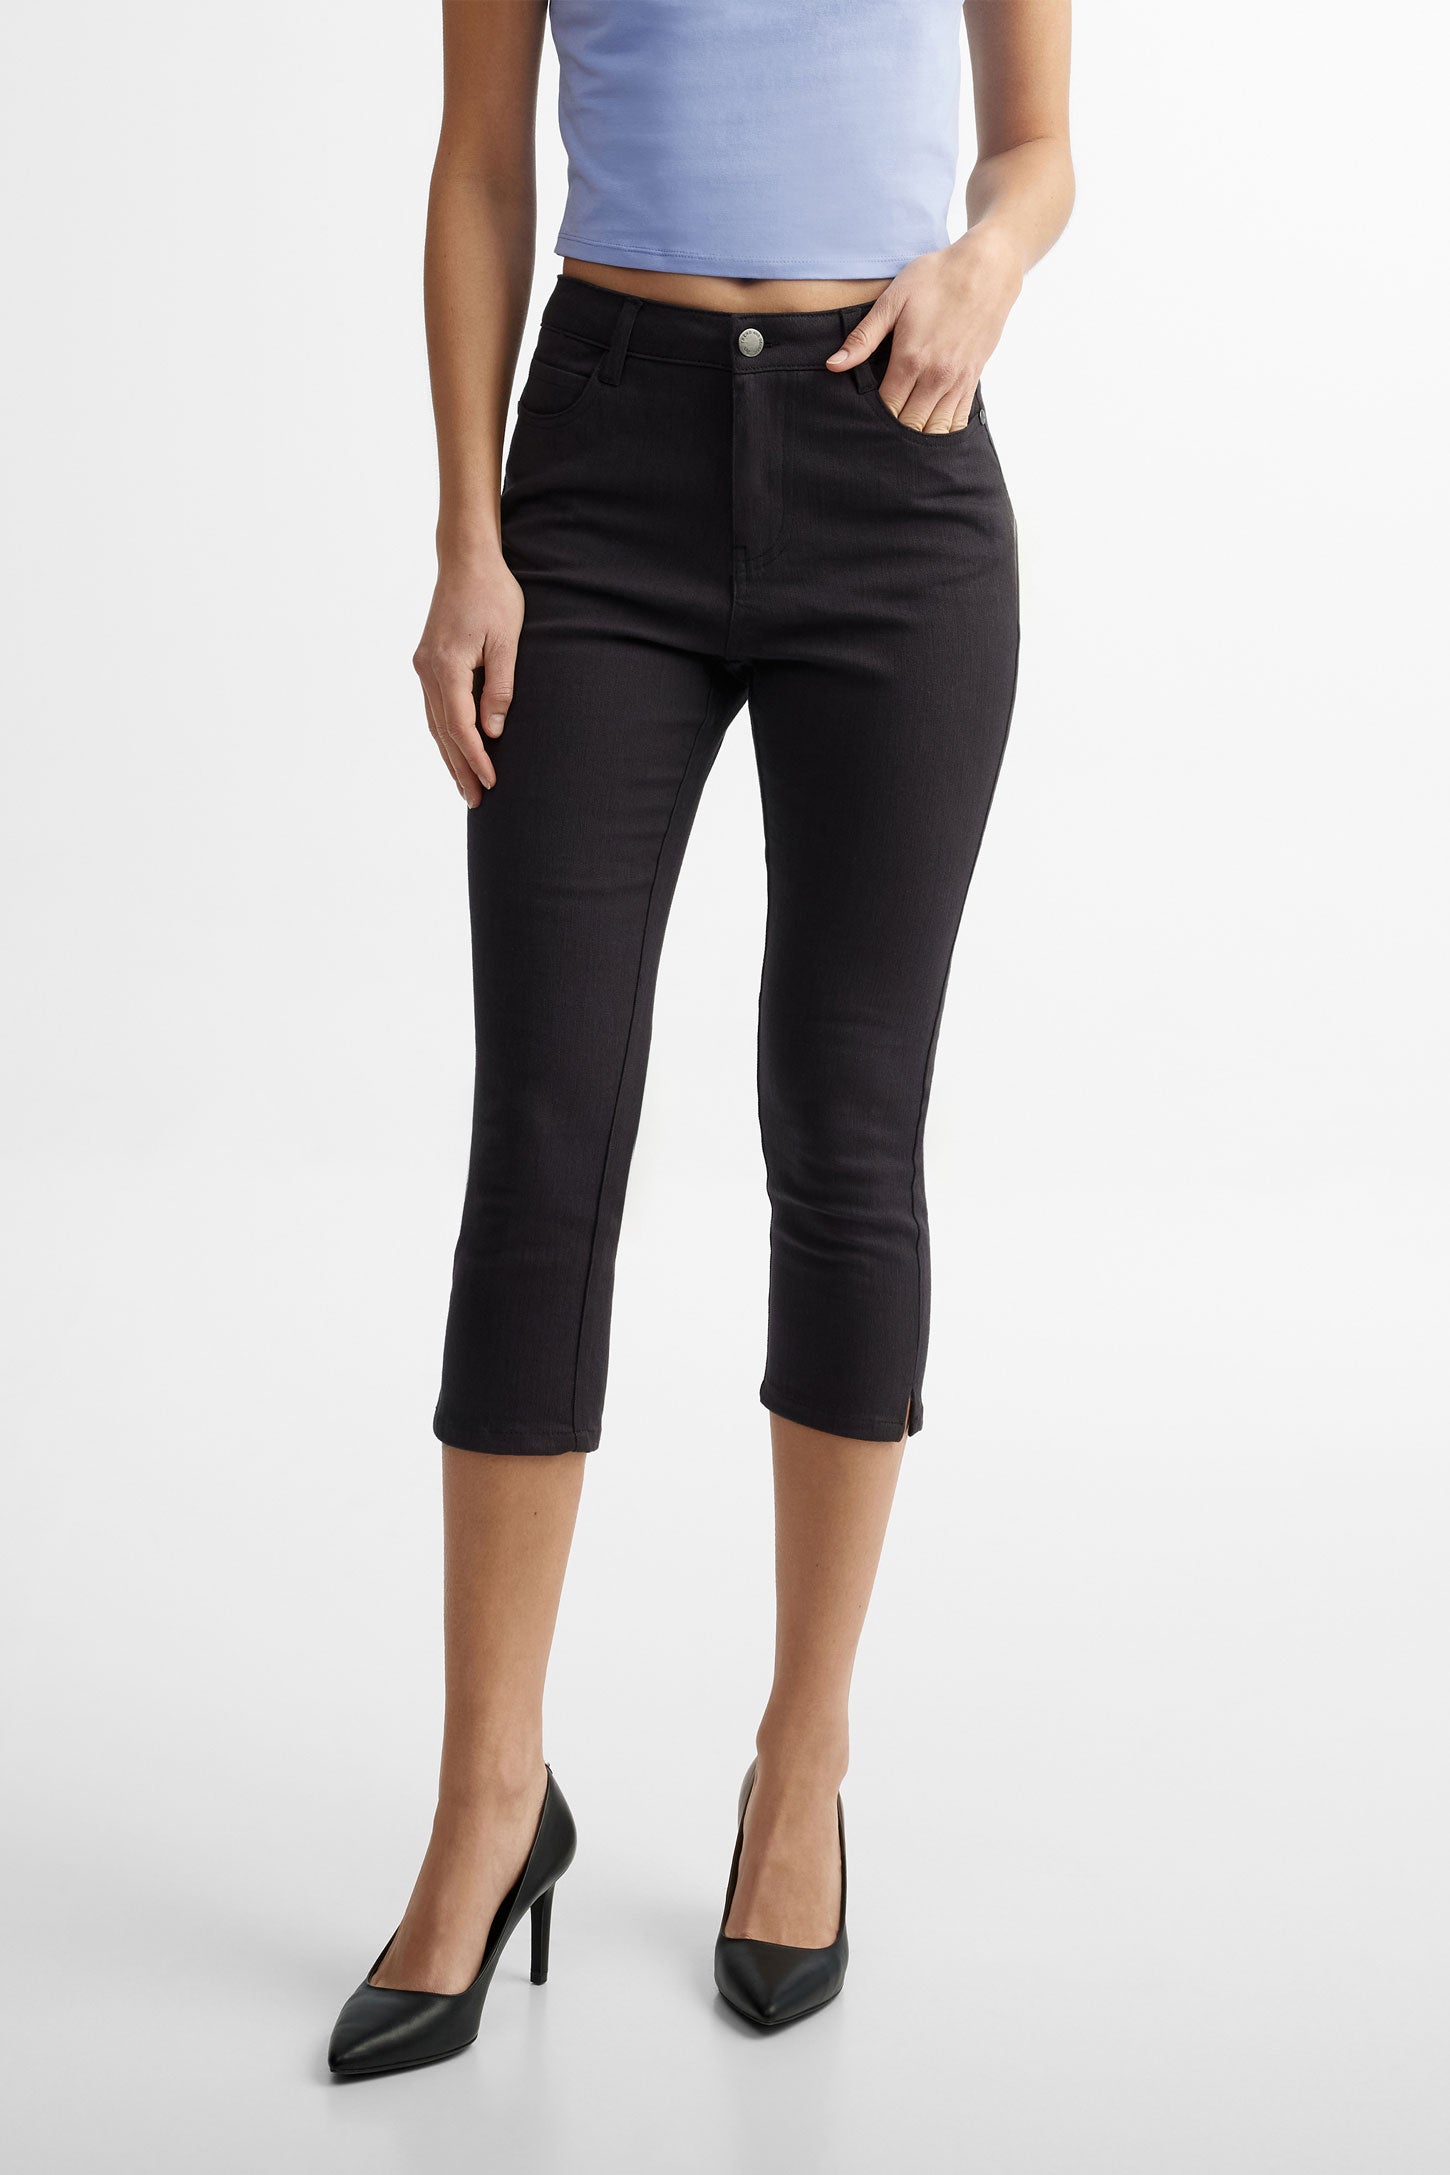 Capri 5 poches coupe ajustée en coton - Femme && NOIR